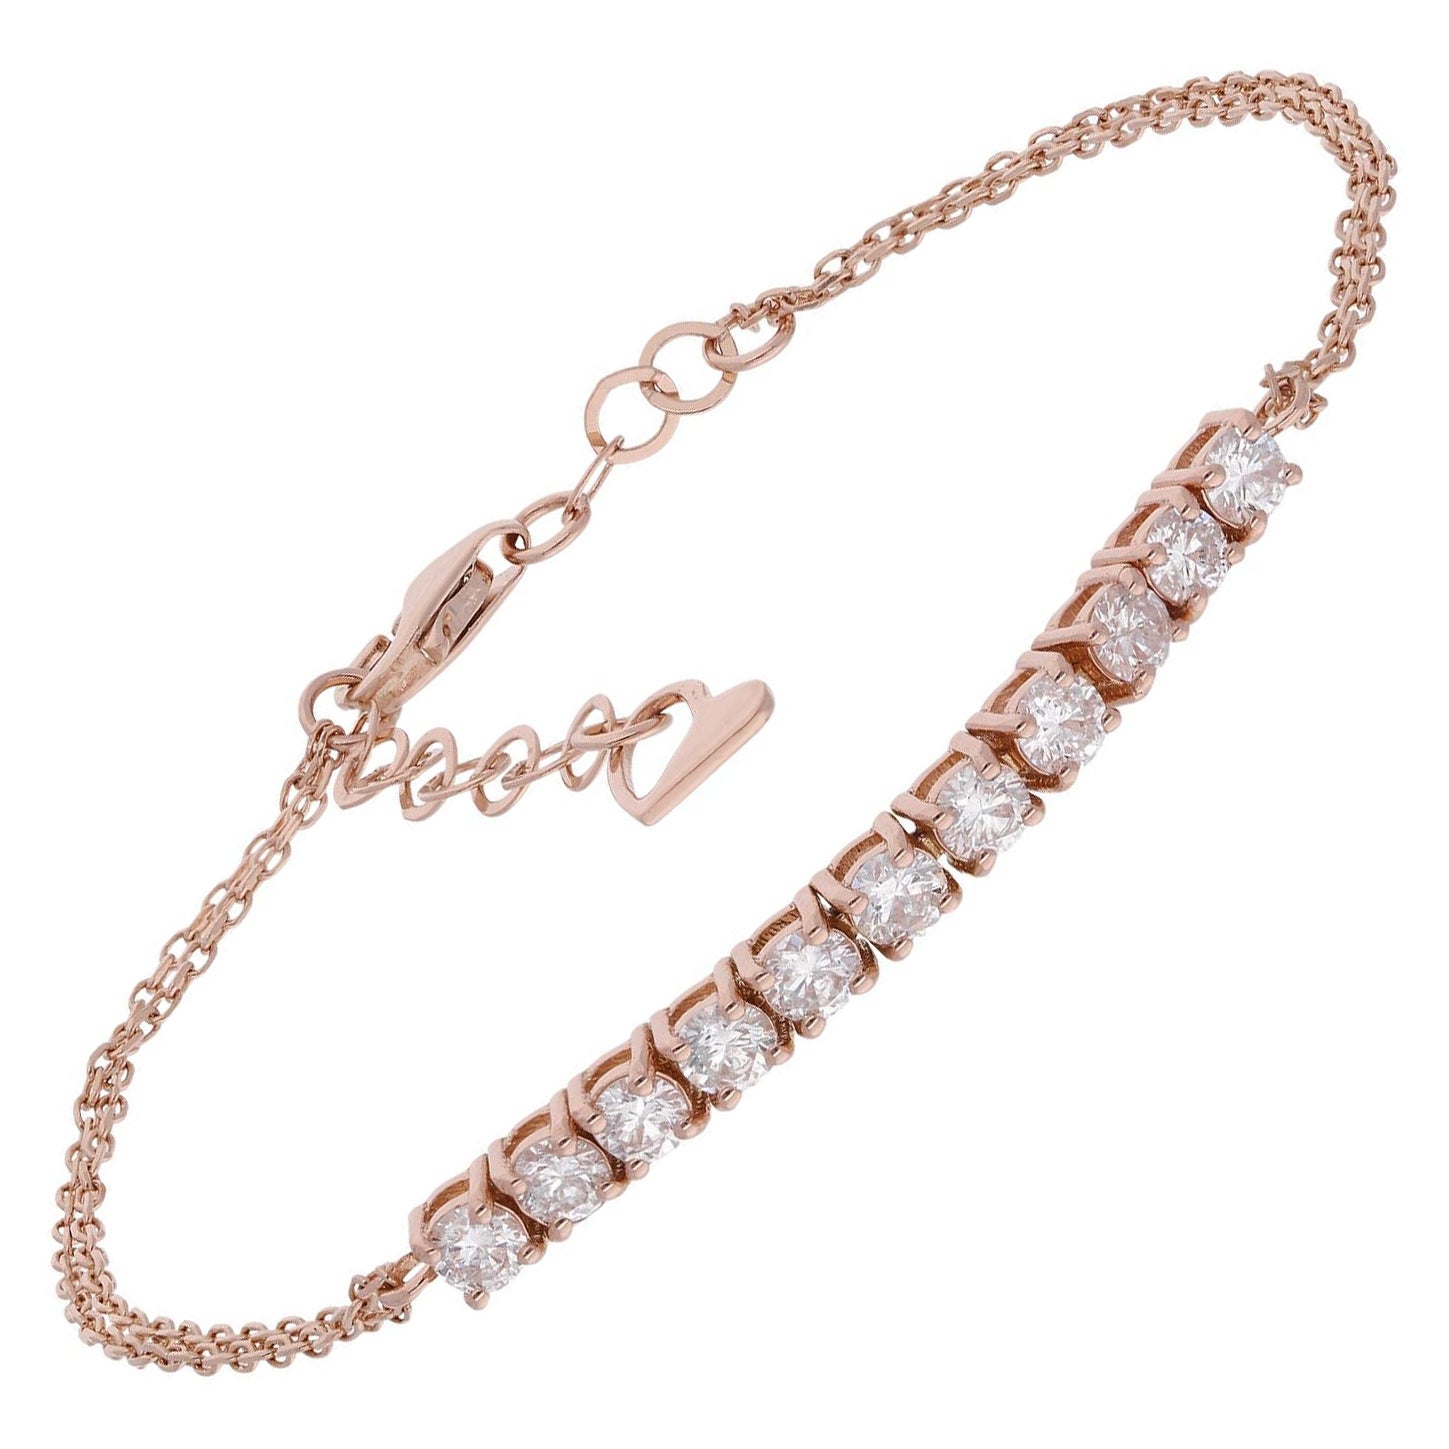 SI Clarity HI Color Diamond Bar Heart Charm Adjustable Bracelet 14 Kt Rose Gold For Sale